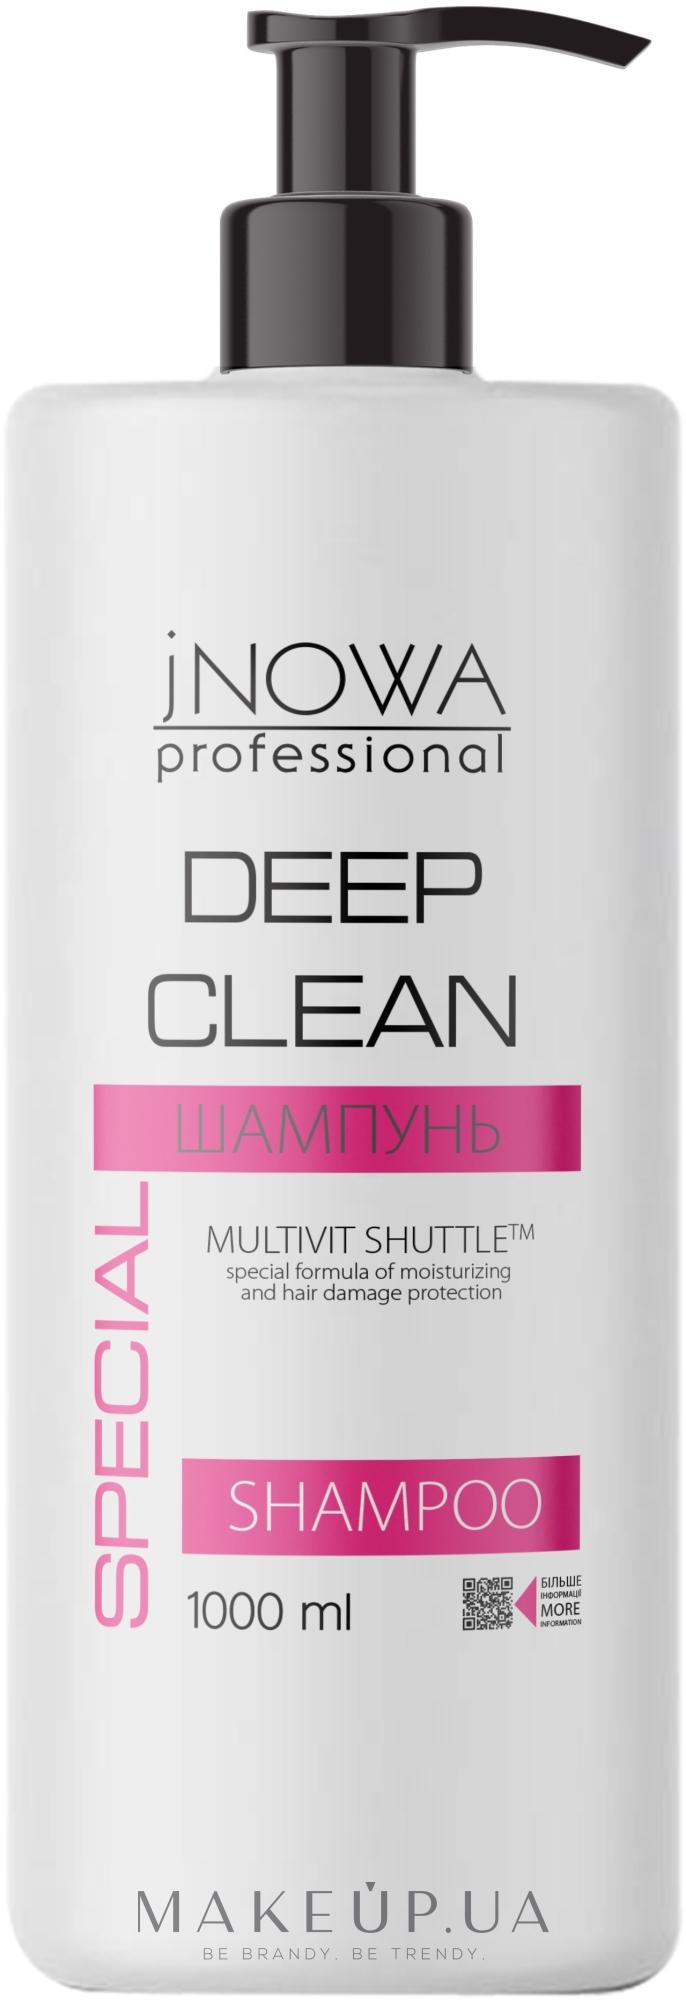 Шампунь для професиональной глубокой очистки волос и кожи головы с морской солью - JNOWA Professional Deep Clean Shampoo — фото 1000ml